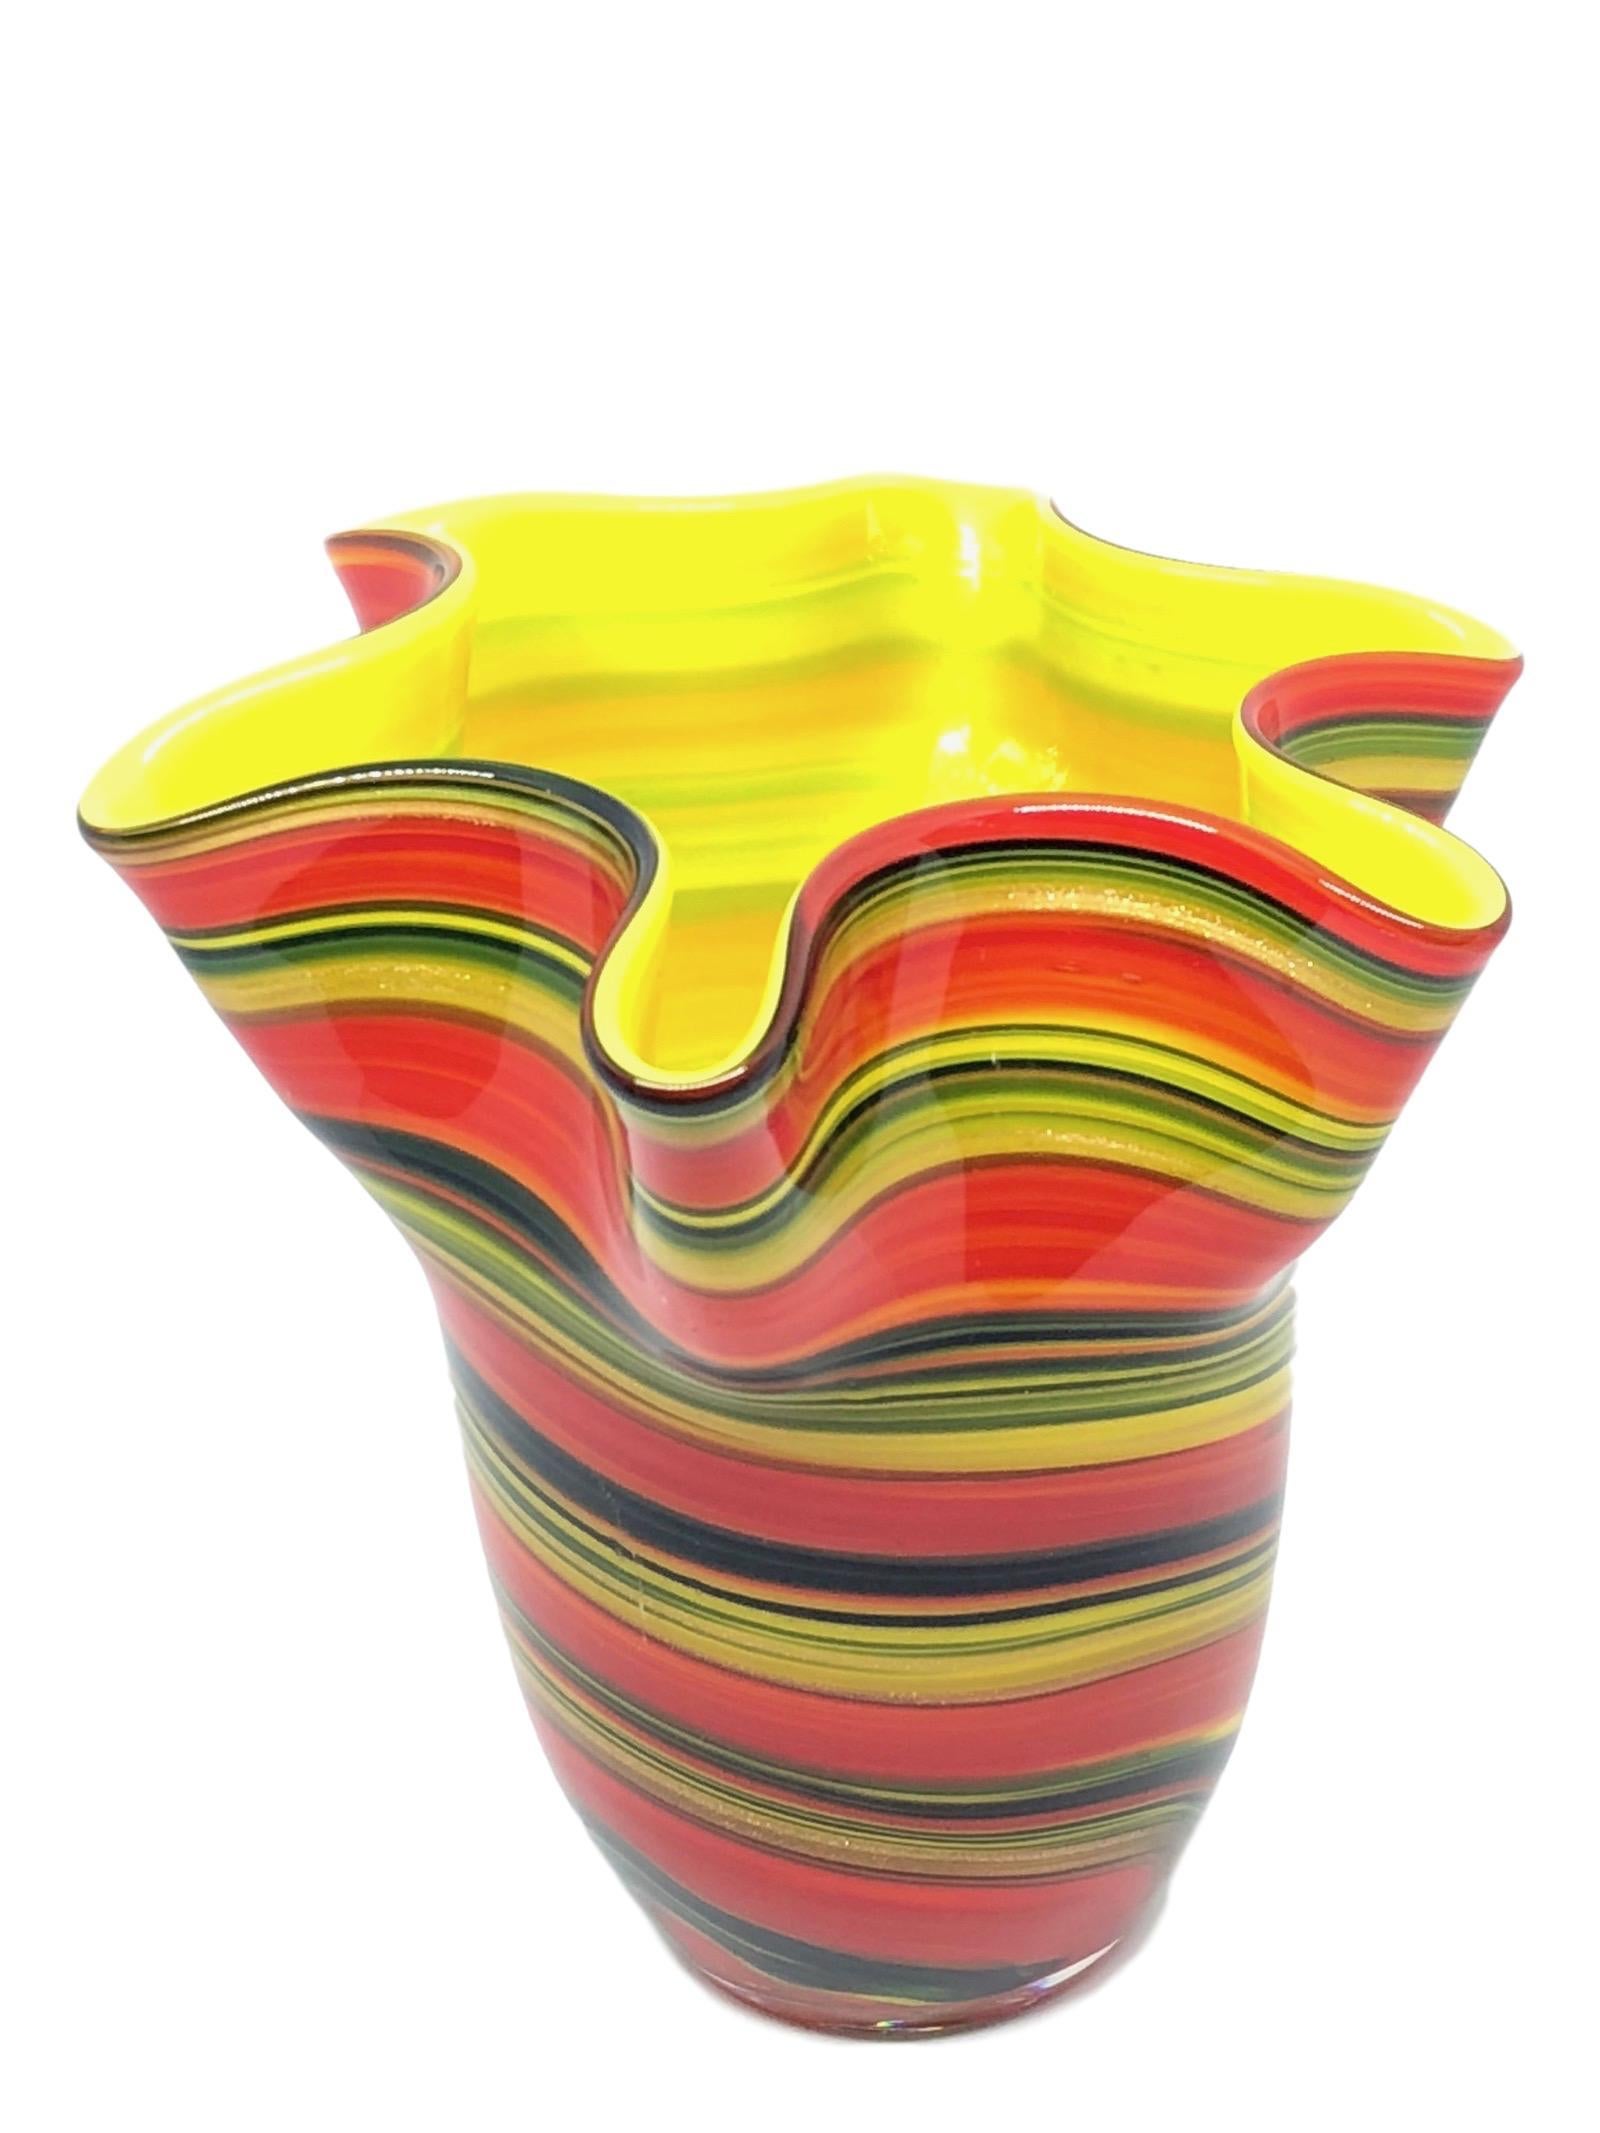 Italian Multicolored Swirl Glass Murano Venetian Glass Vase by Fazzoletto For Sale